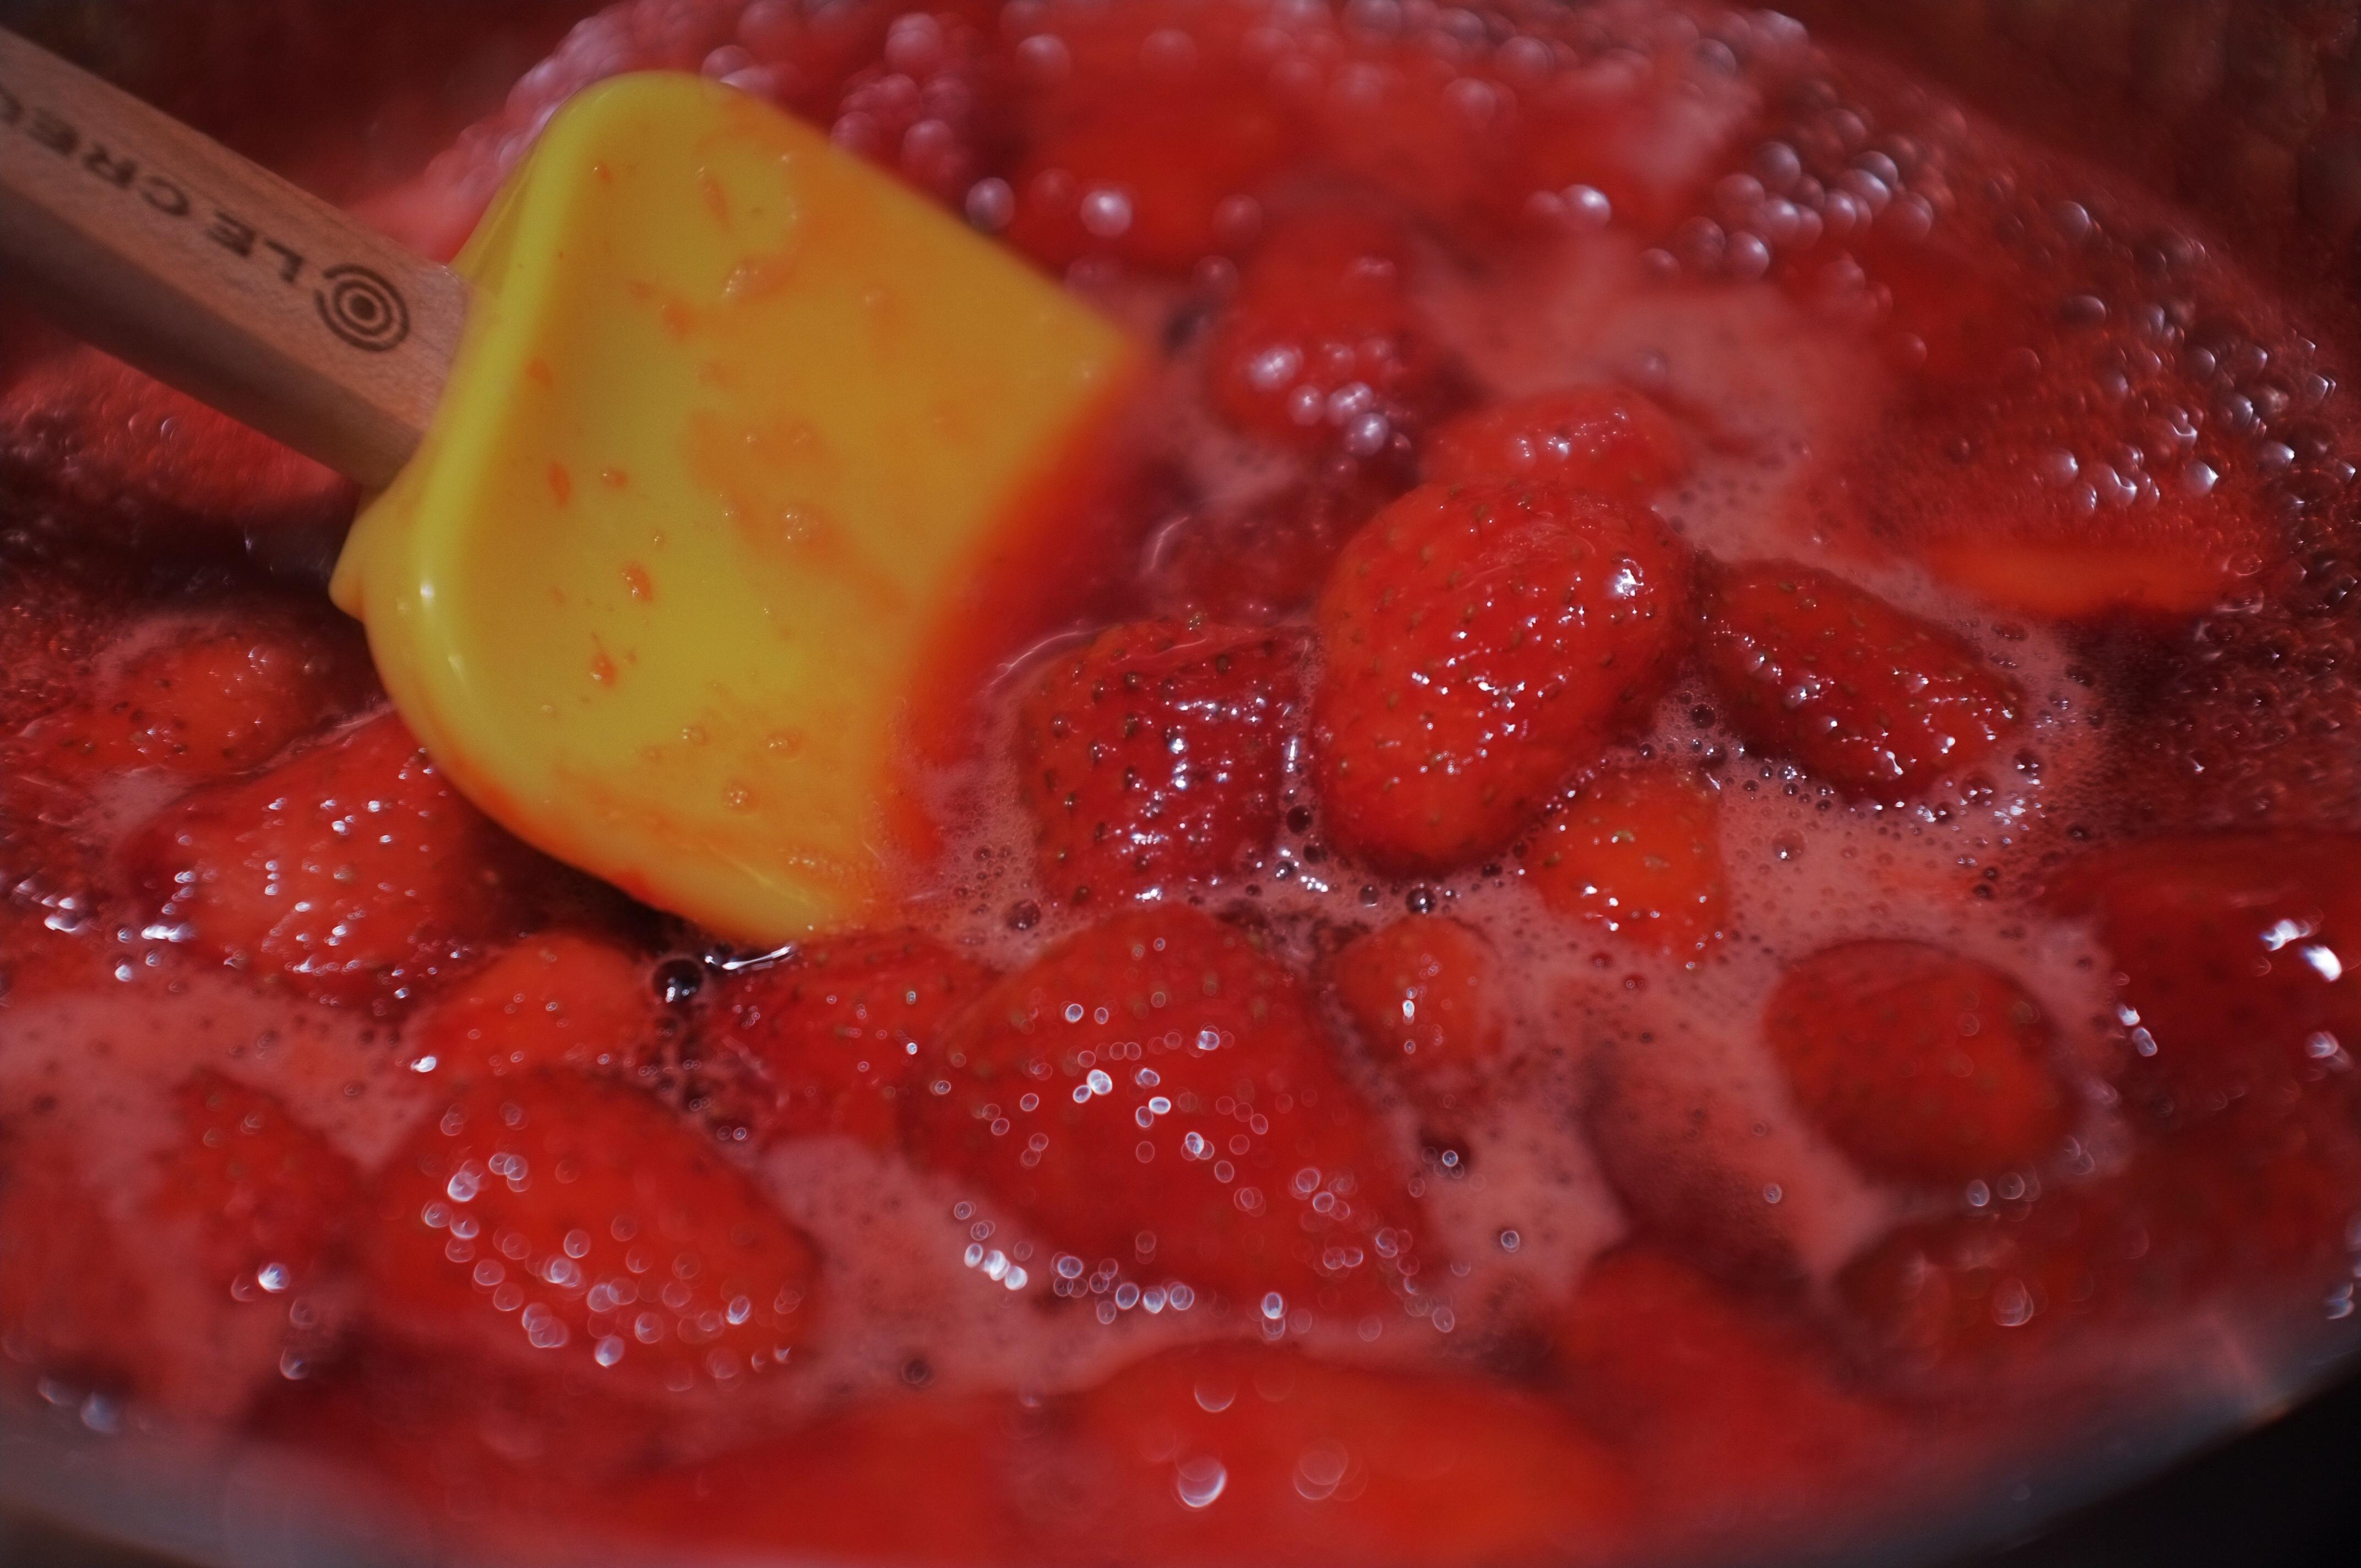 红糖草莓酱怎么做_红糖草莓酱的做法_Tine_Yang_豆果美食